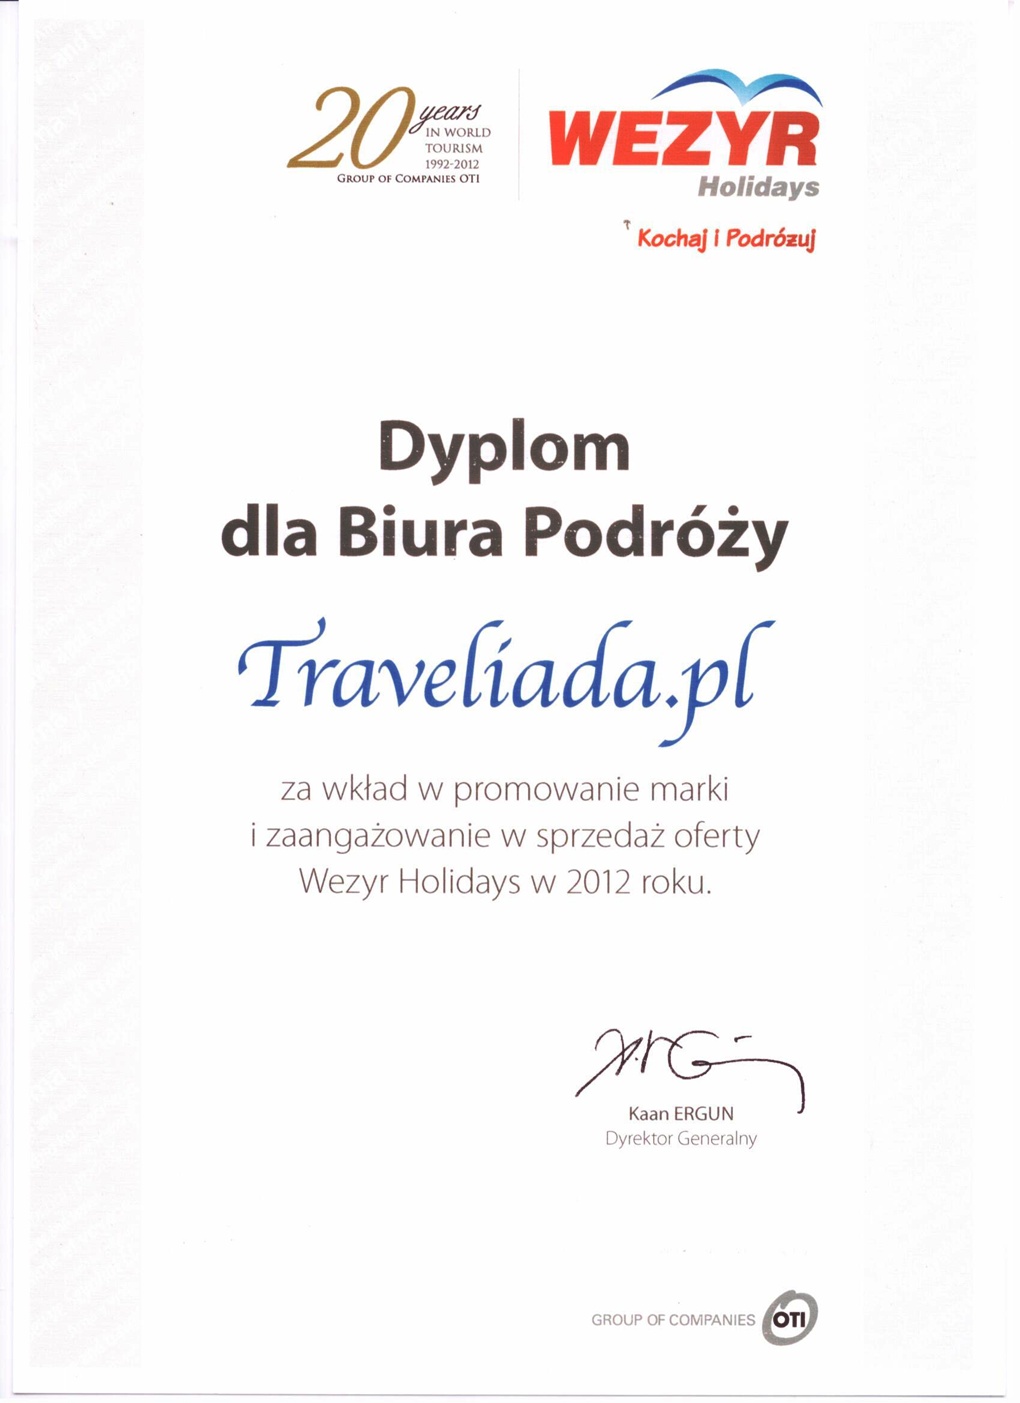 Nagroda dla Traveliada.pl od Wezyr Holidays